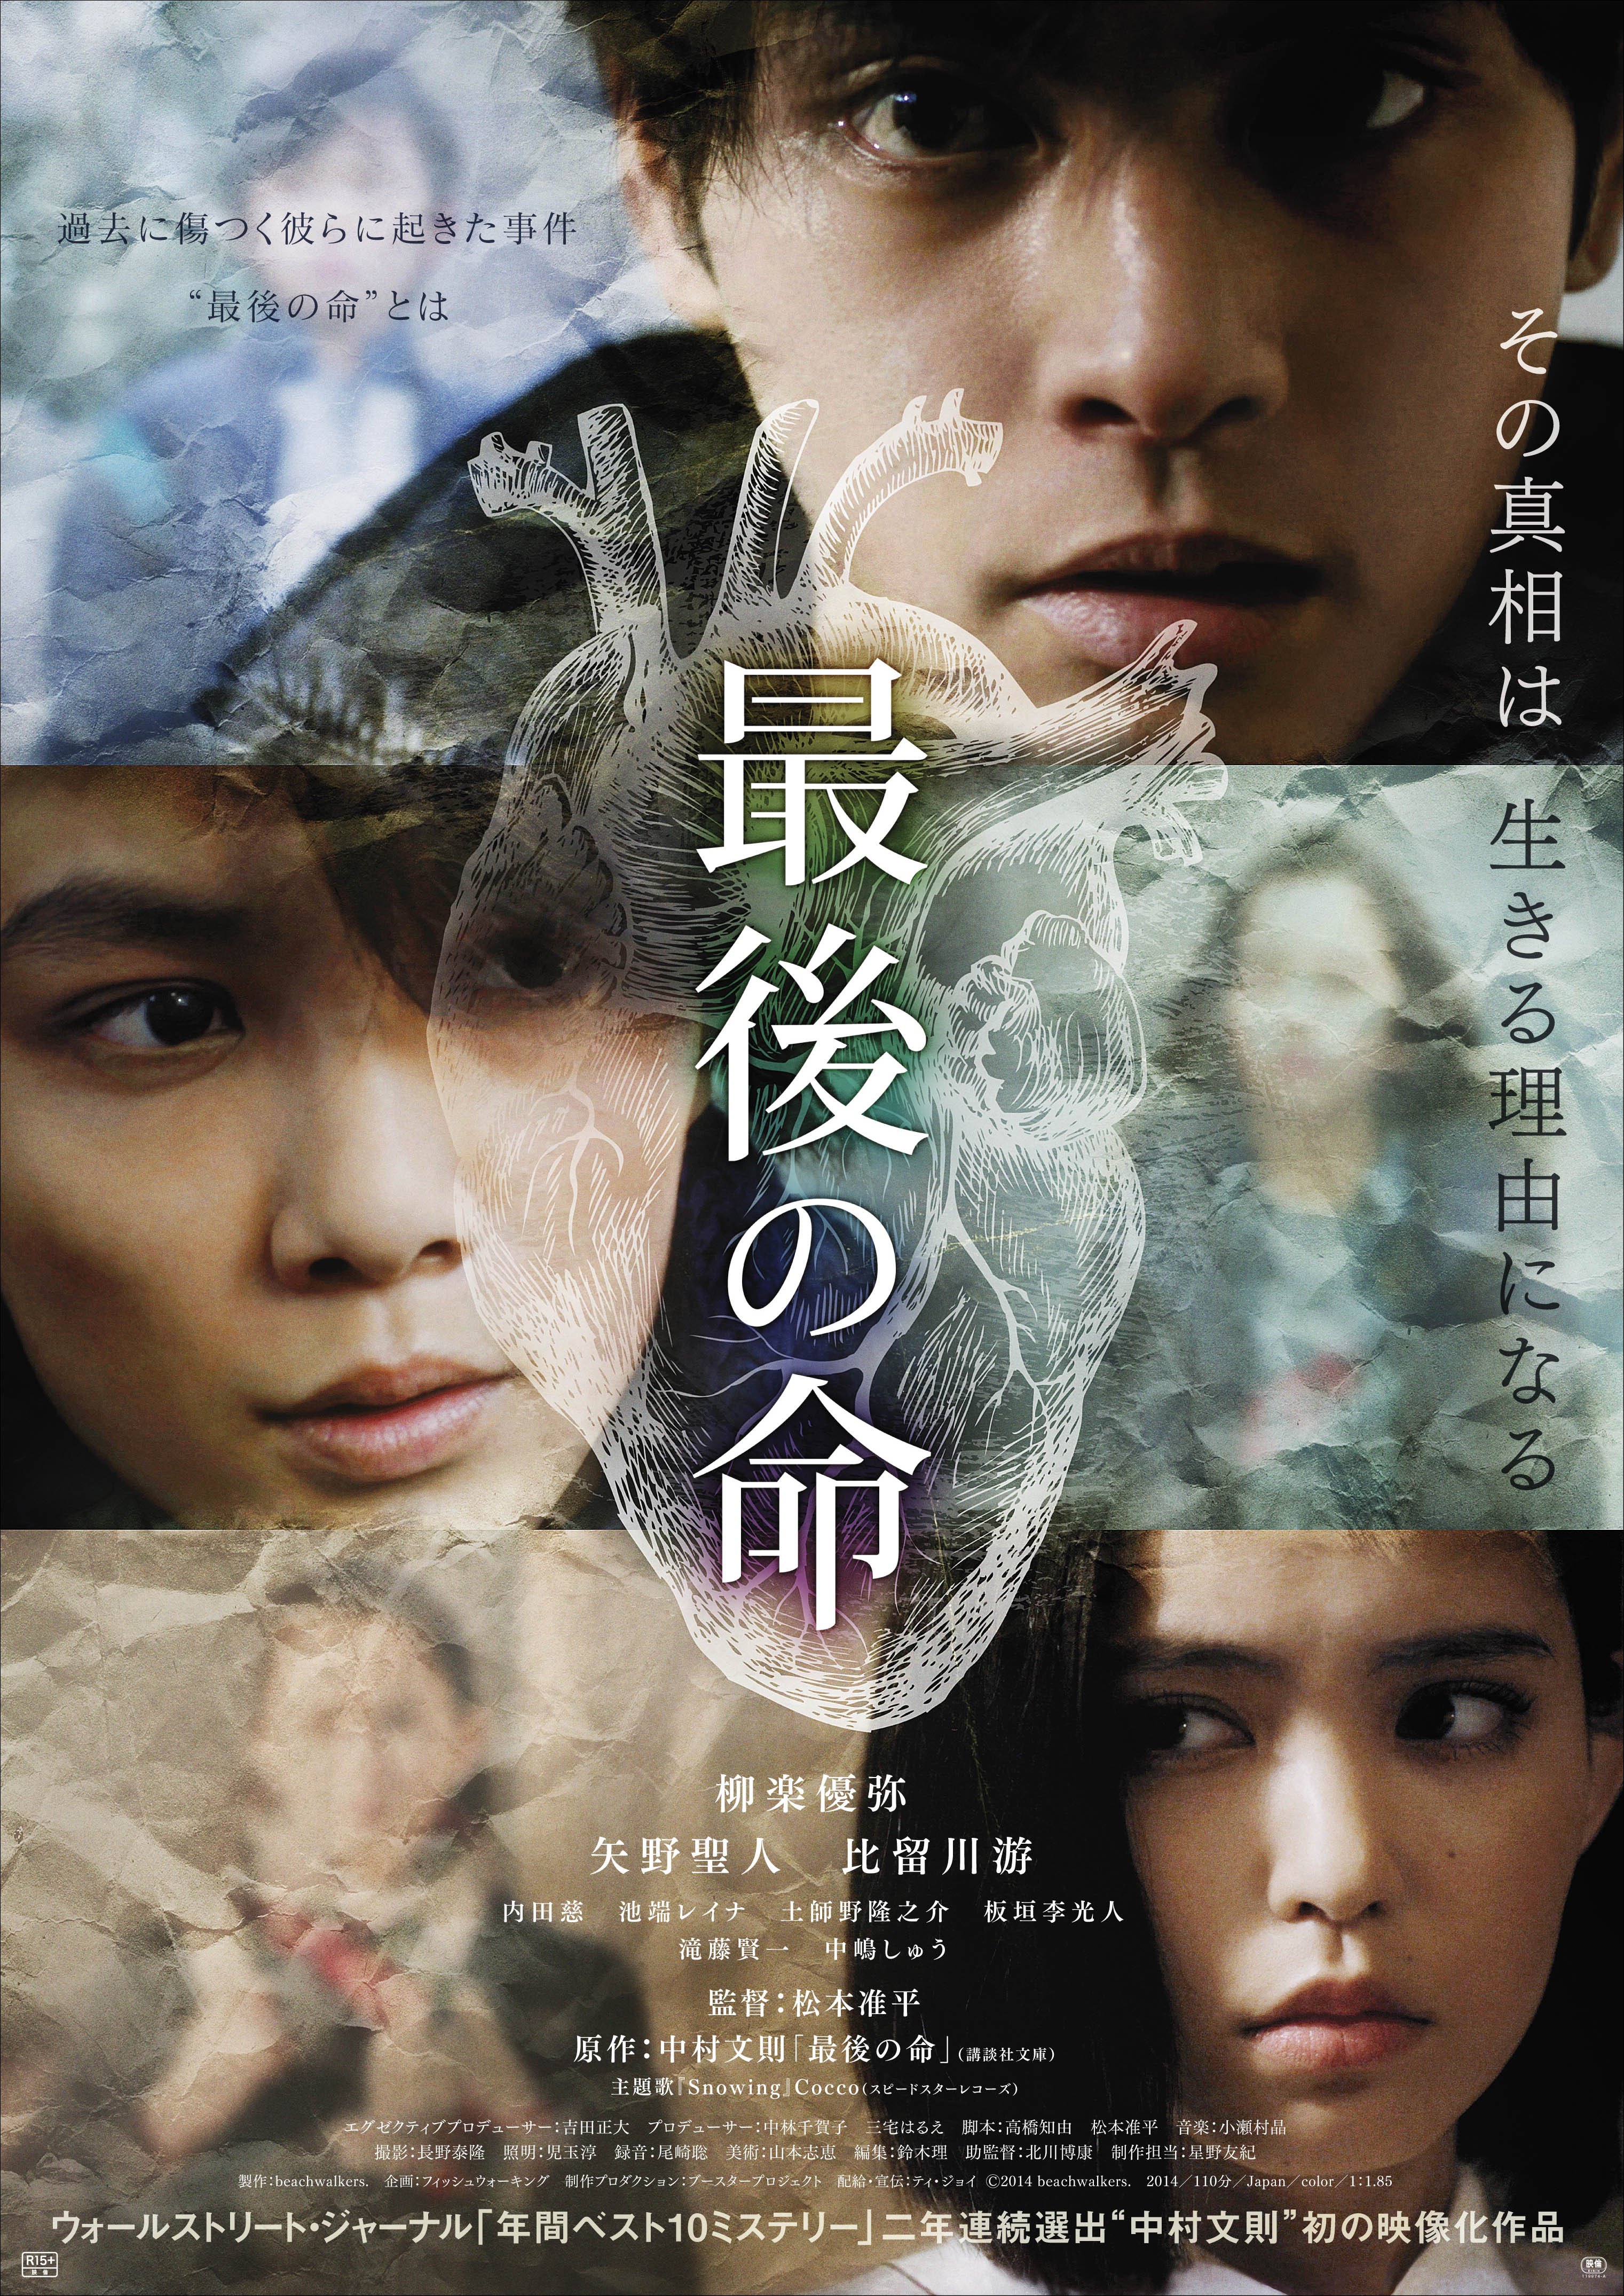 中村文則作品を映画化した柳楽優弥4年ぶりの主演作「最後の命」主題歌はCoccoの新曲